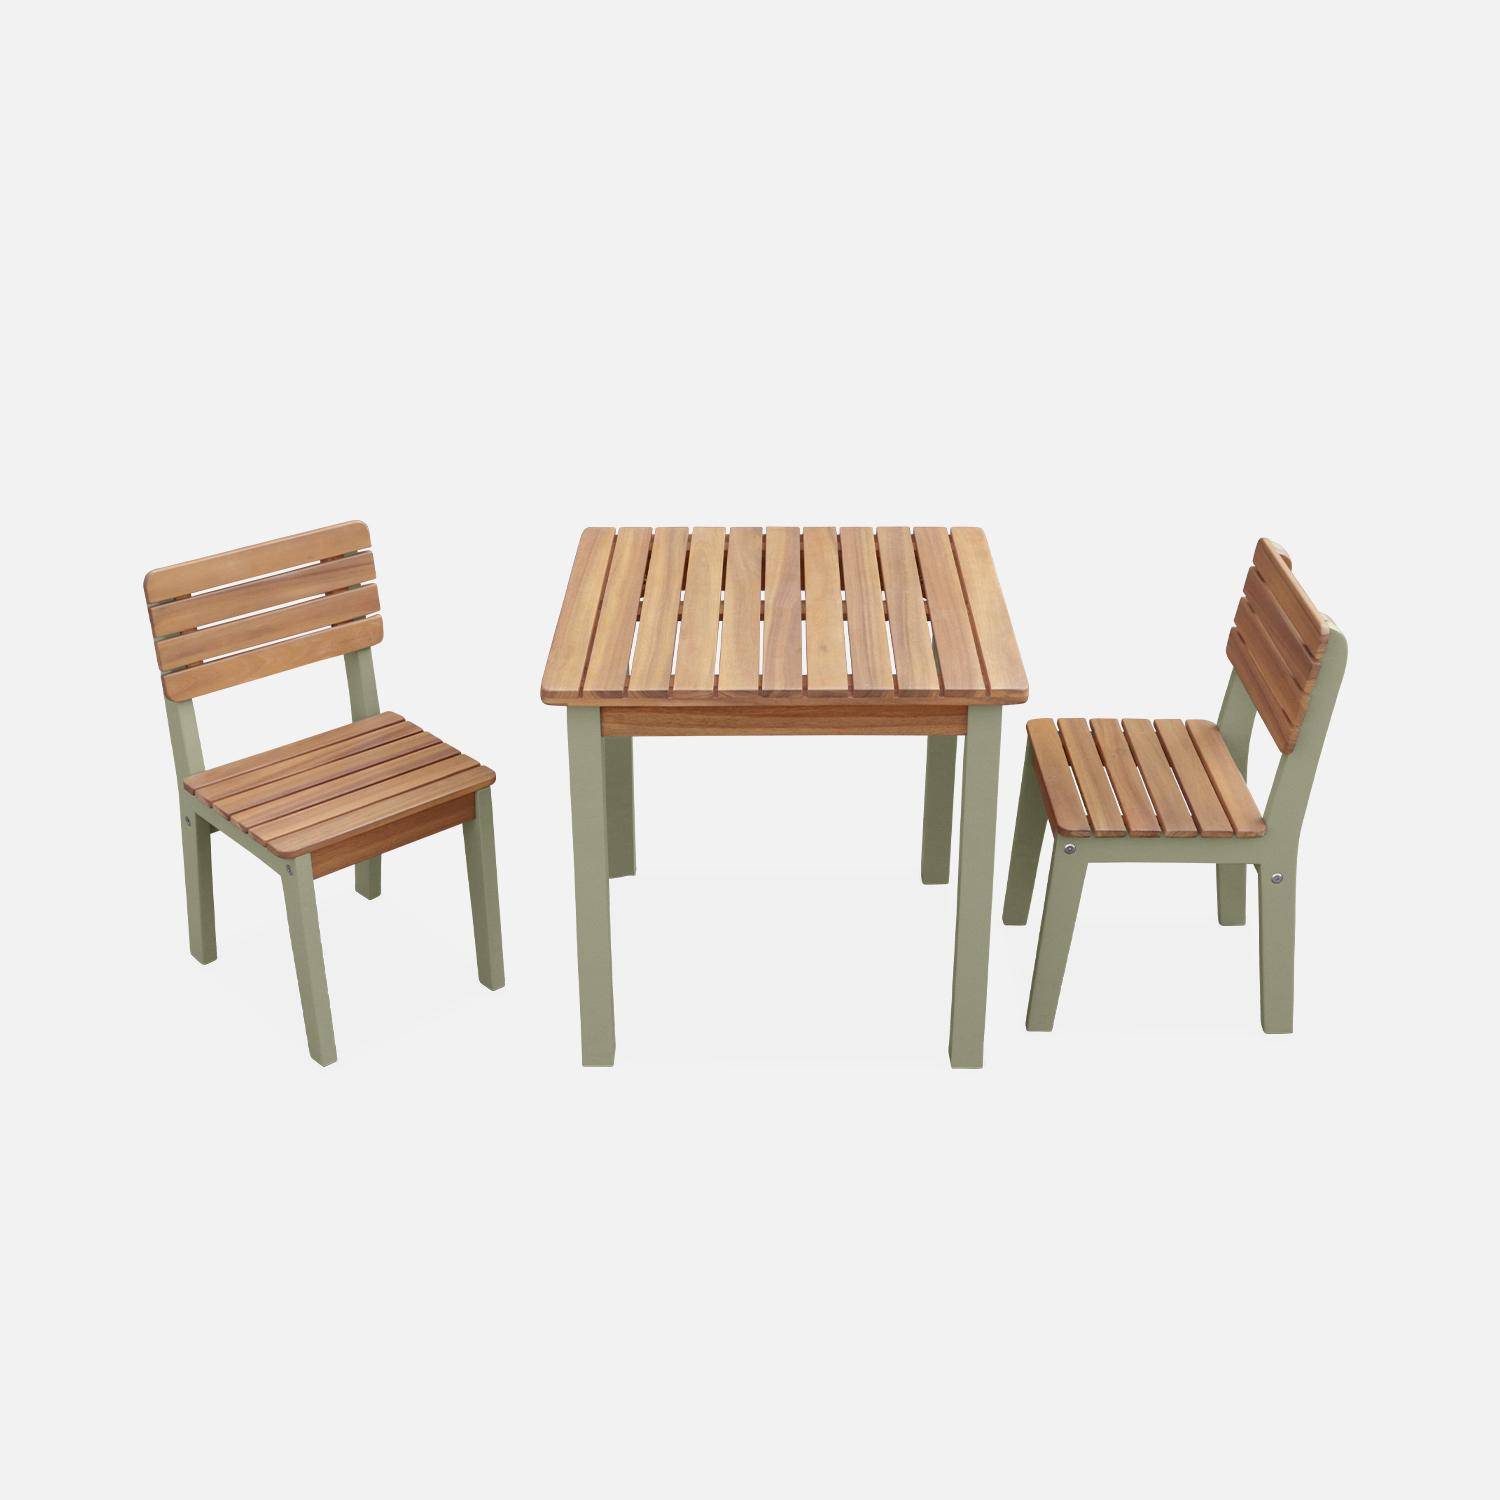 Kindertisch mit 2 Stühlen aus FSC-Akazienholz, graugrün, für drinnen und draußen mit 2 Stühlen Photo3